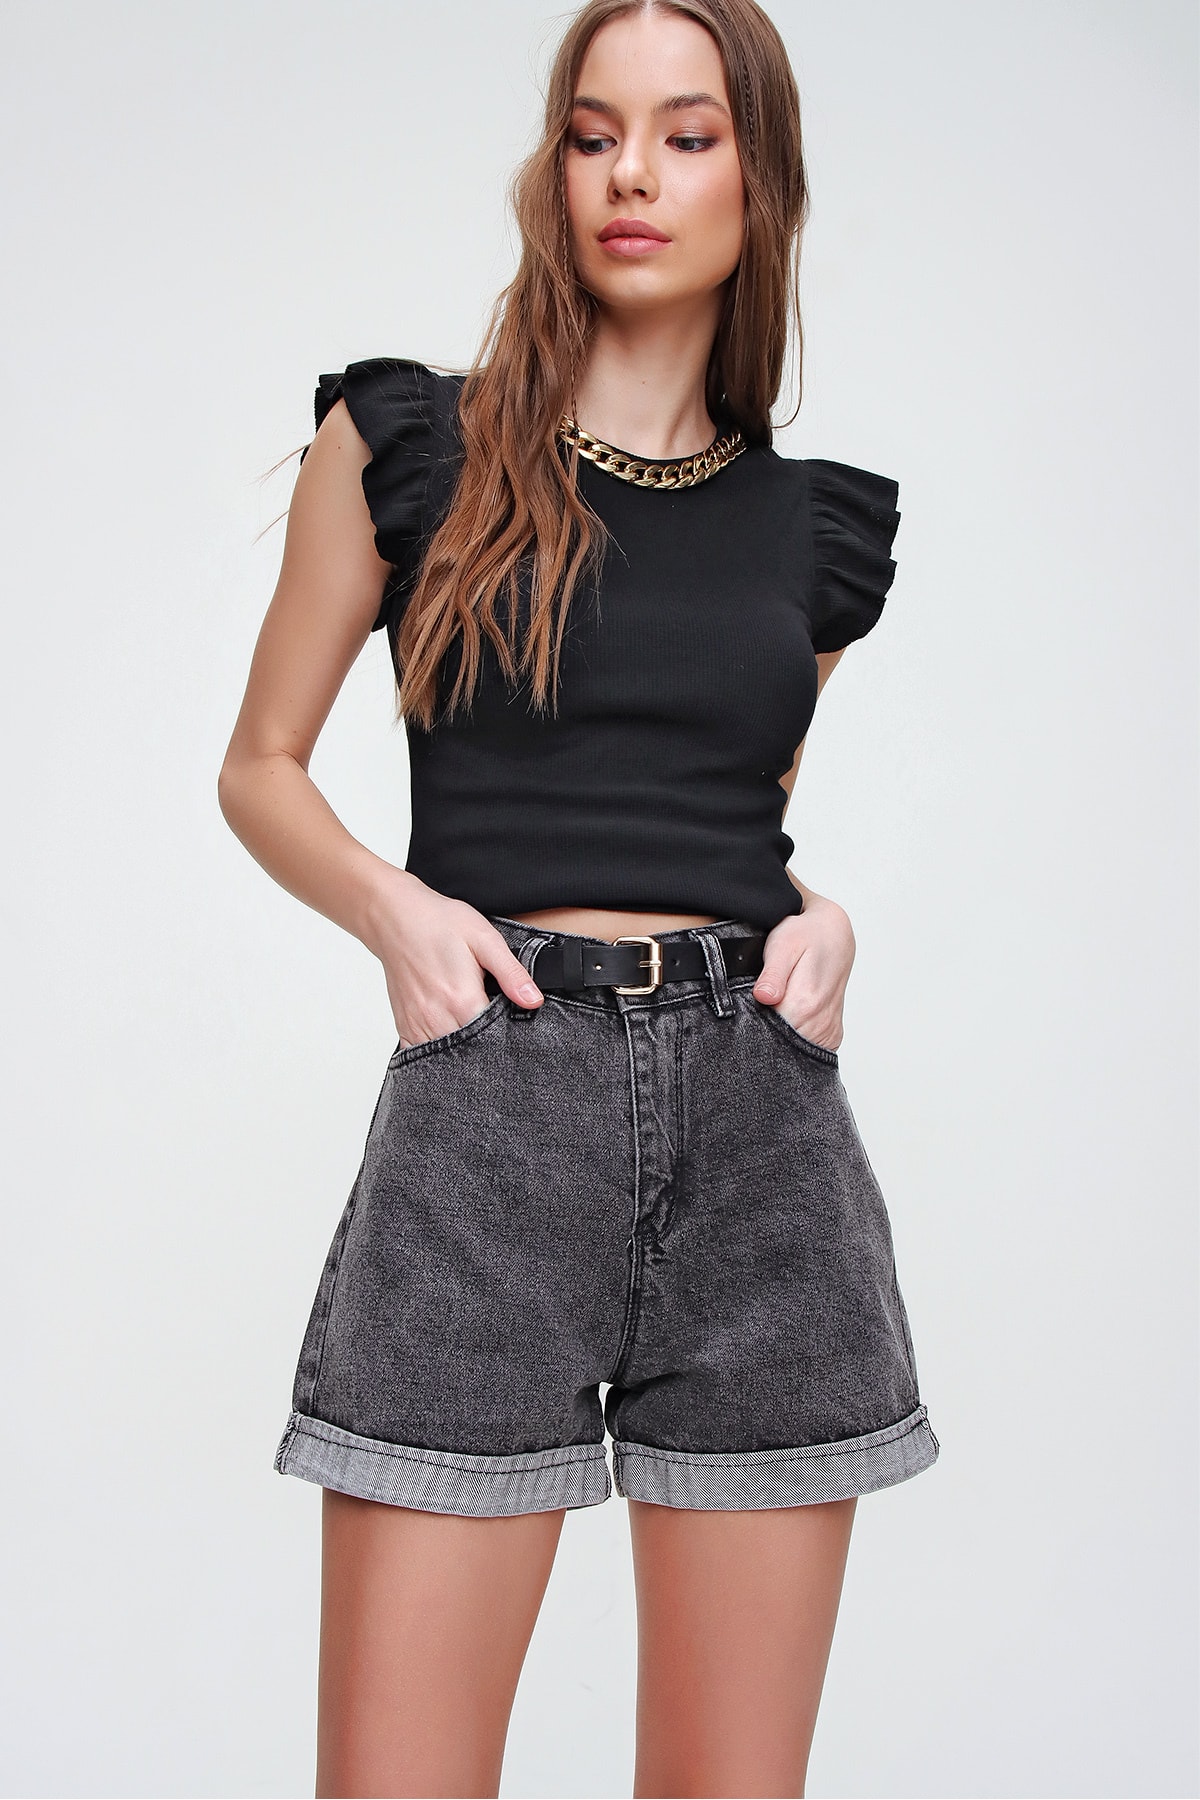 شلوارک جین فاق بلند زنانه Trend Alaçatı Stili کد X5938